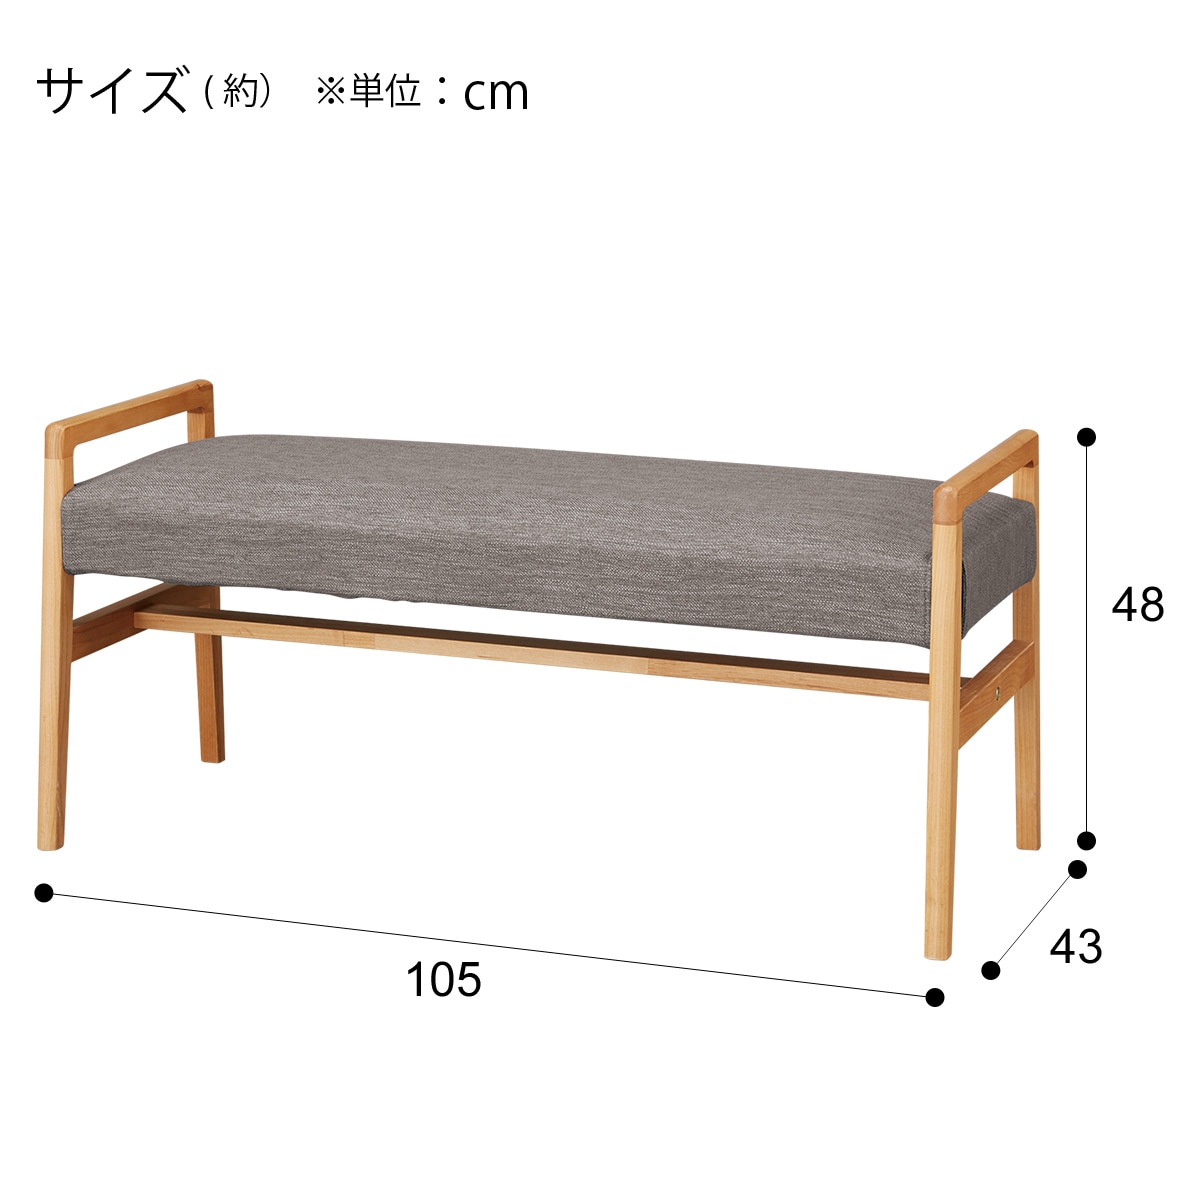 ベンチ(アルナスDF105LBR/DRAV-GY)通販 | ニトリネット【公式】 家具